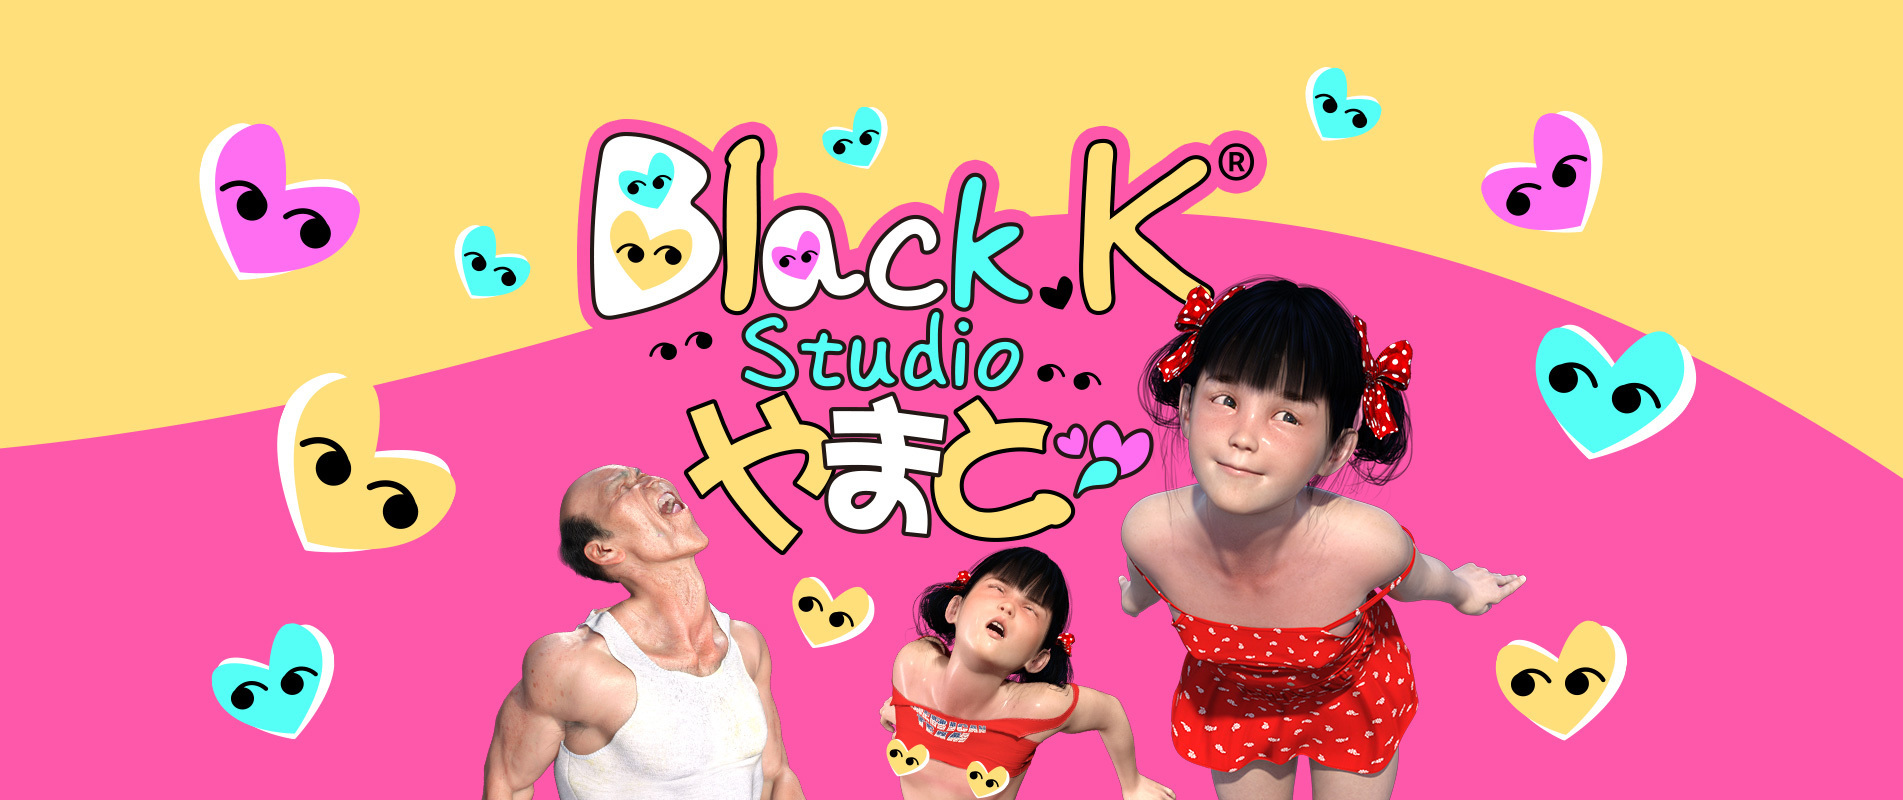 blackK-studio